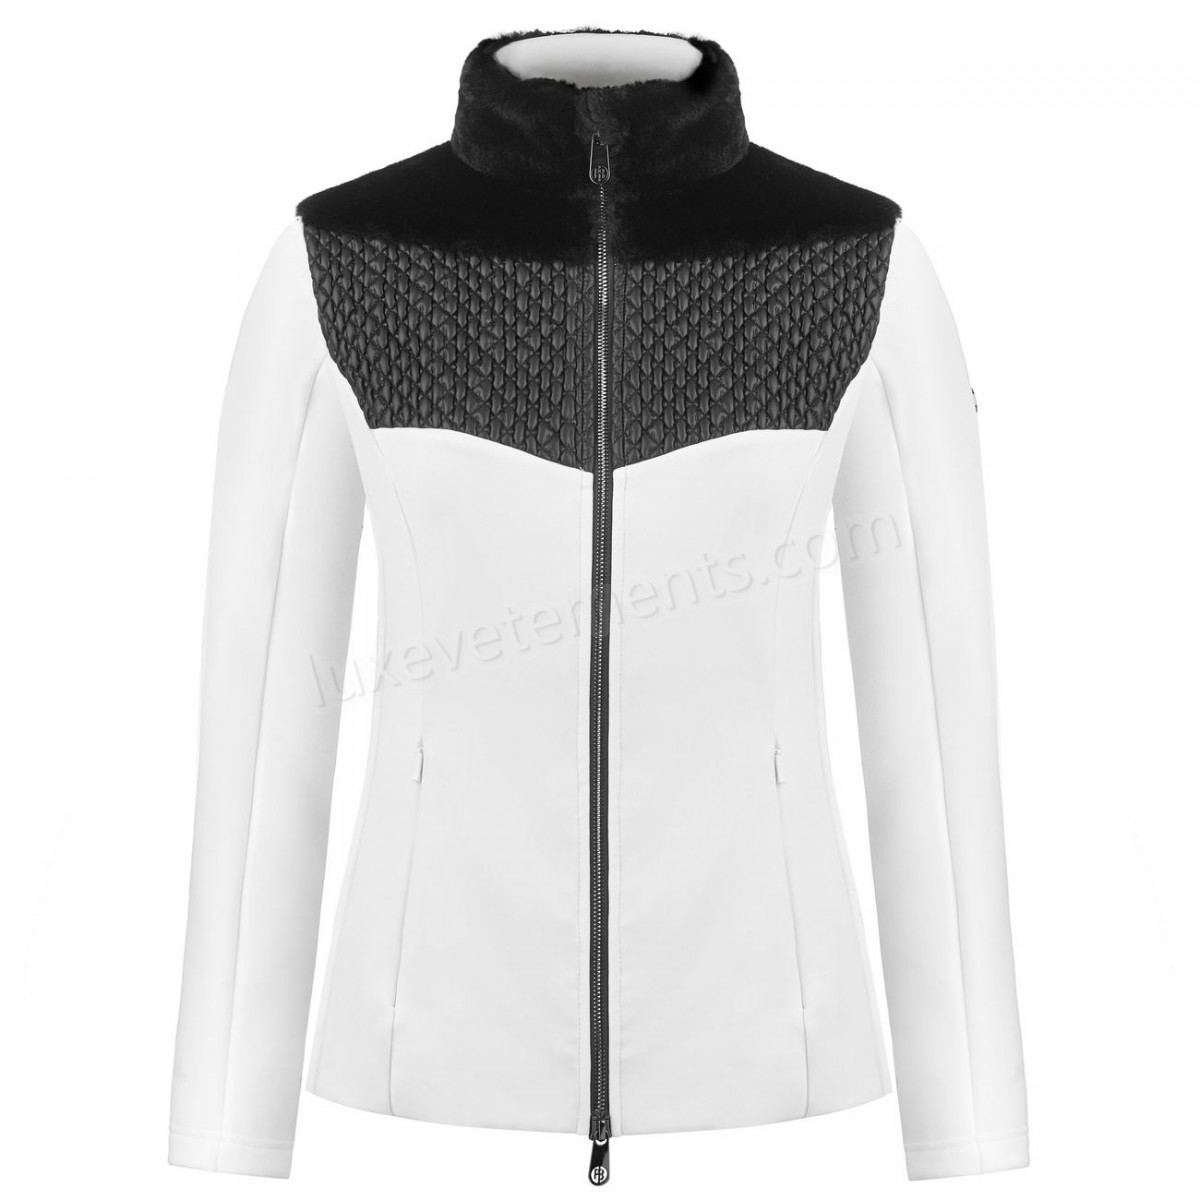 Poivre Blanc-Sports d'hiver femme POIVRE BLANC Veste En Polaire Poivre Blanc Hybrid Stretch Fleece Jacket 1600 Multico White Femme Vente en ligne - -4